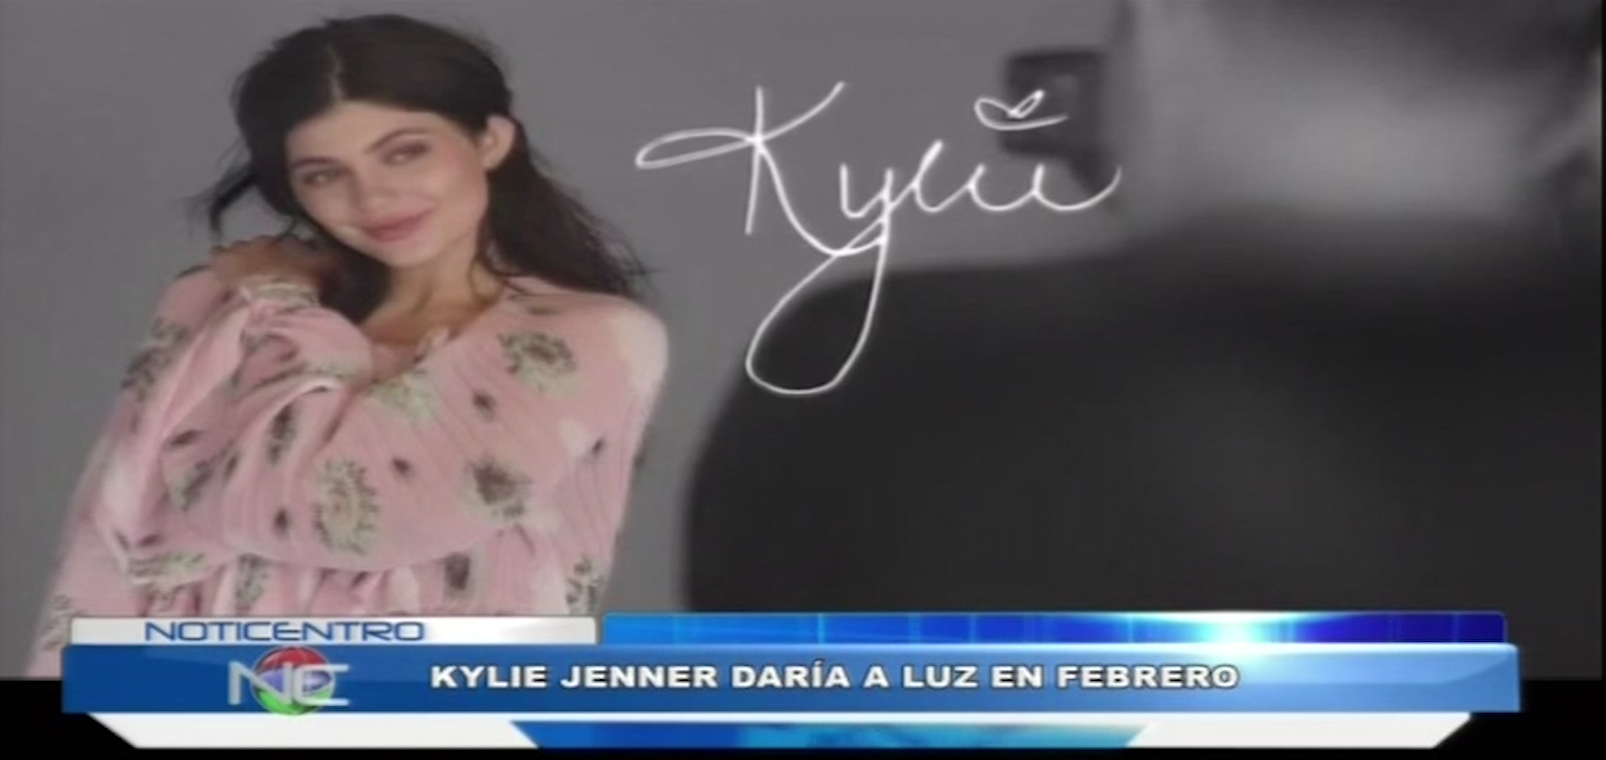 Se Presume Que Kyle Jenner Podría Estar Dando A Luz En Febrero